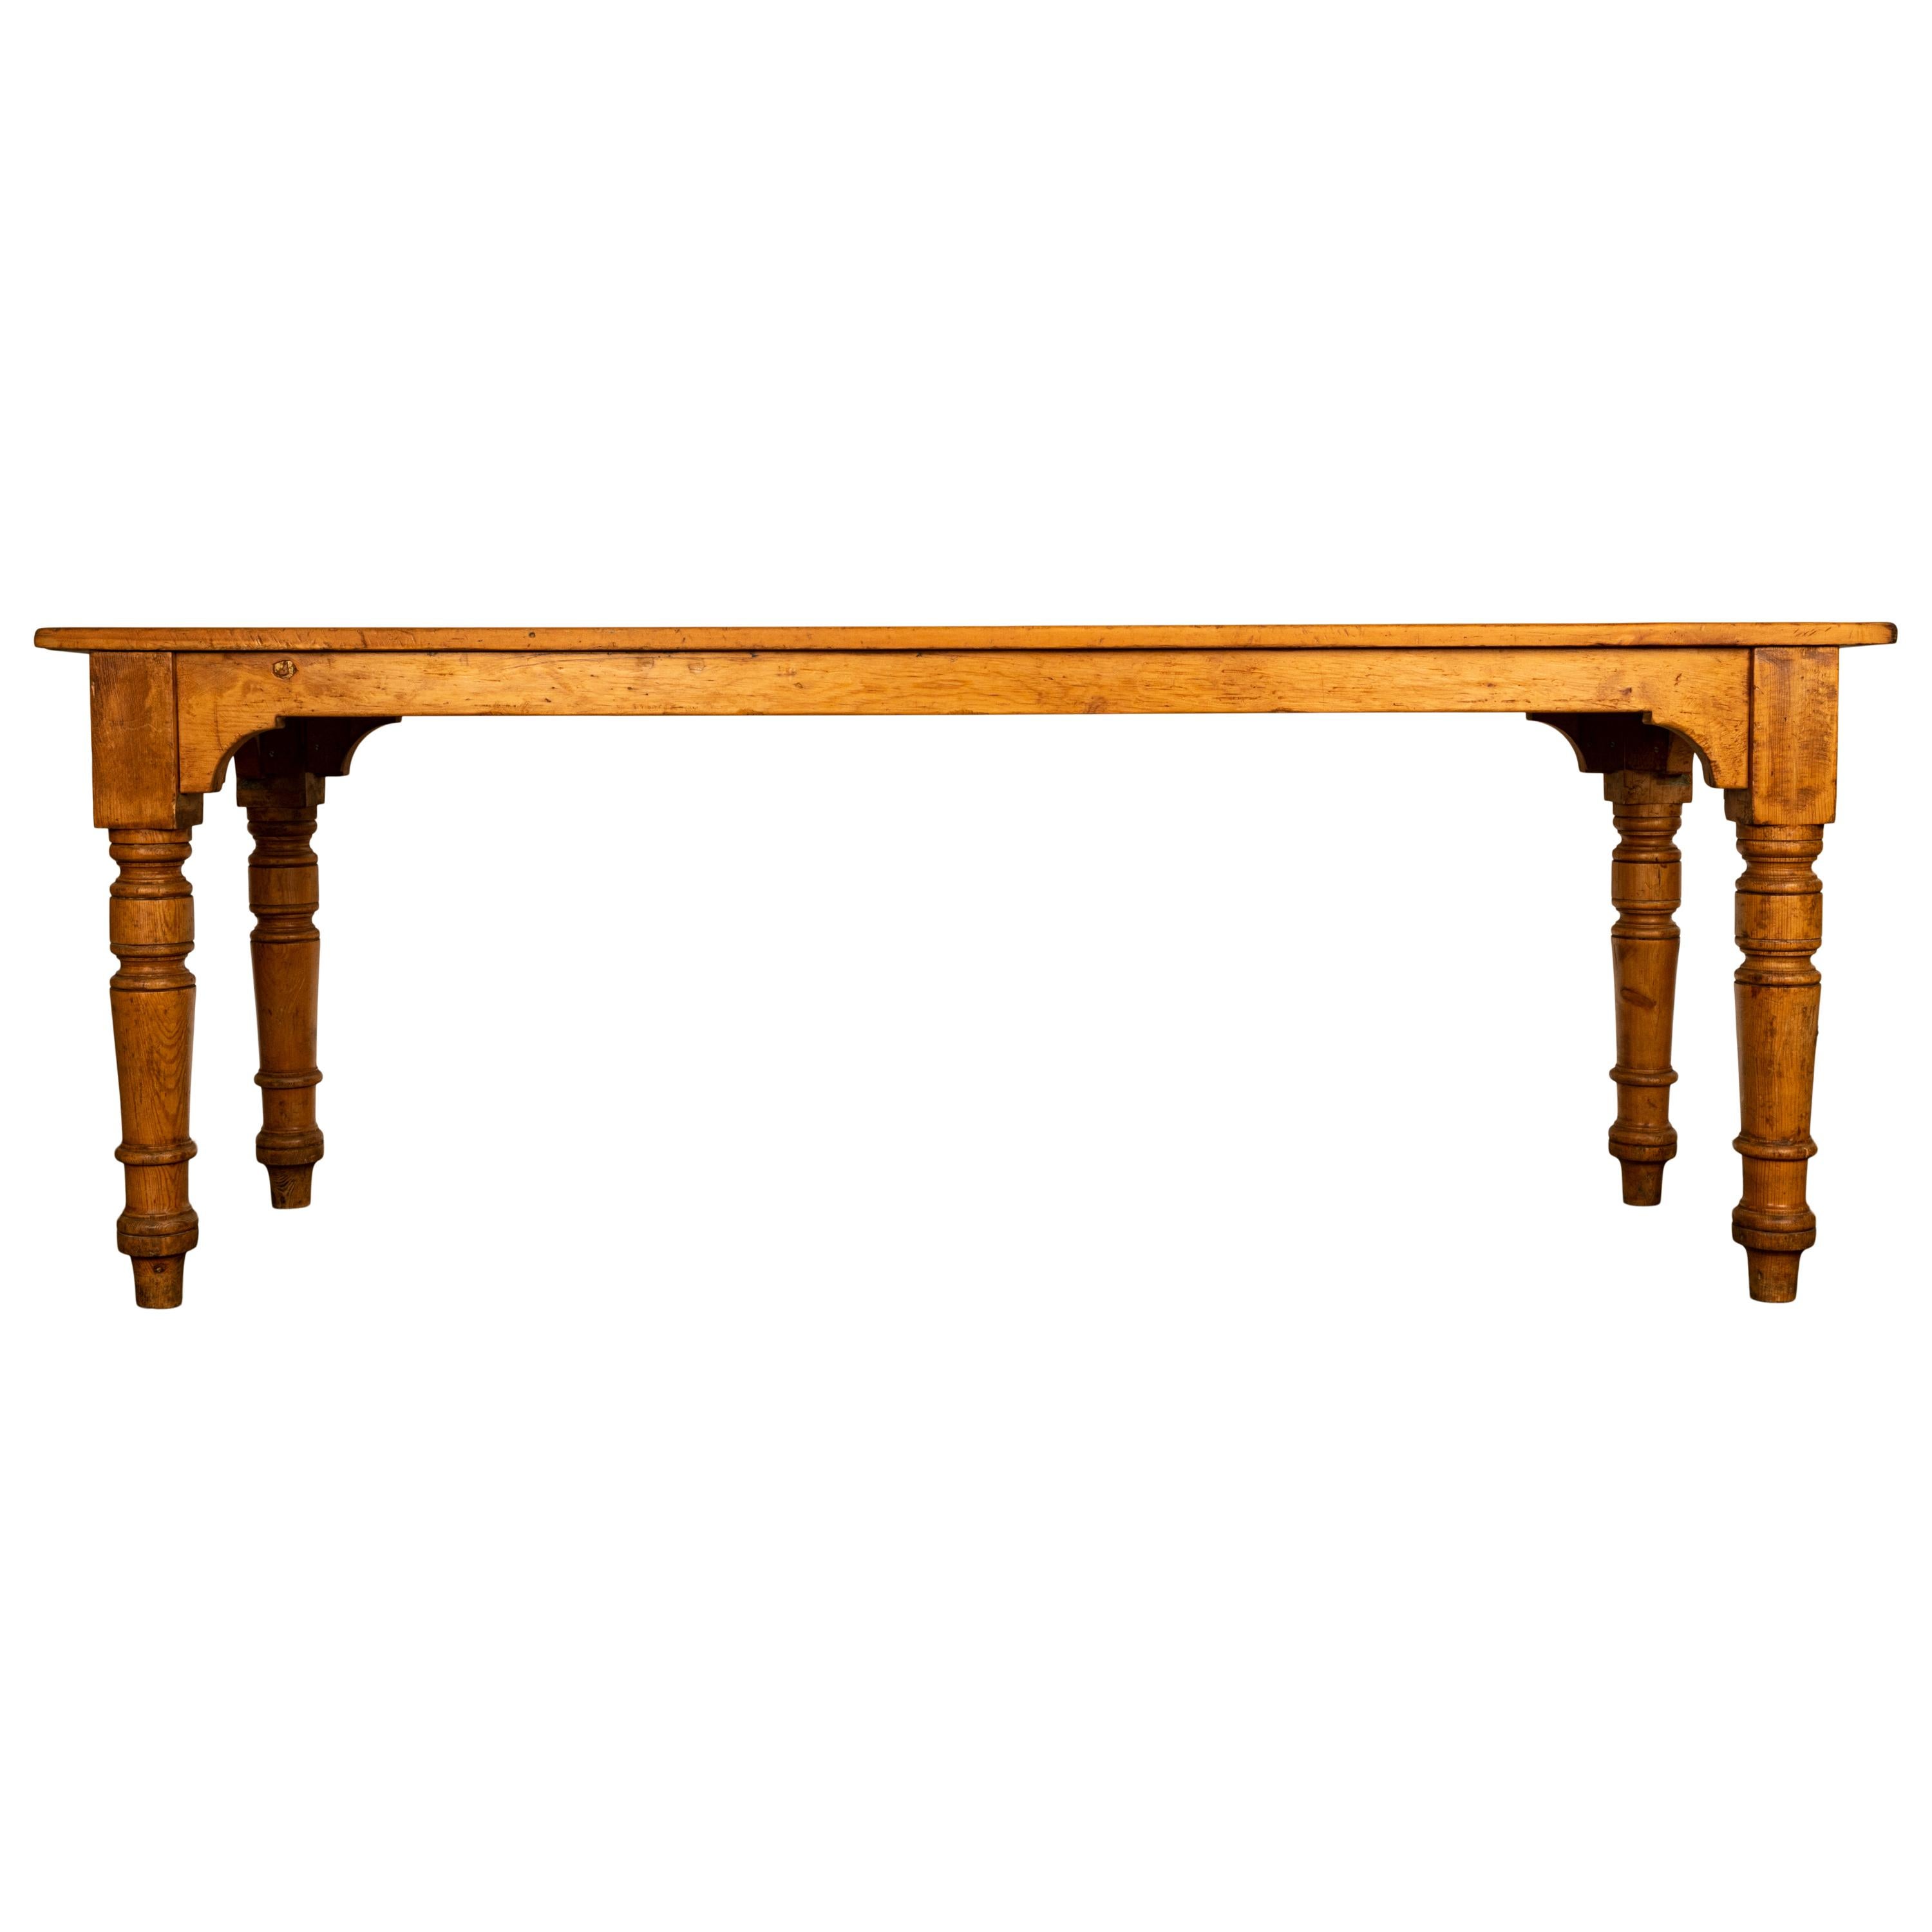 Eine gute antike 19. Jahrhundert Kiefer 7 'Land Bauernhaus Kiefer Tisch, circa 1860.
Der lange Tisch ist aus Kiefernholz gefertigt und steht auf vier gedrechselten Beinen, der Tischsockel ist auf jeder Seite gewölbt, die Tischplatte besteht aus drei